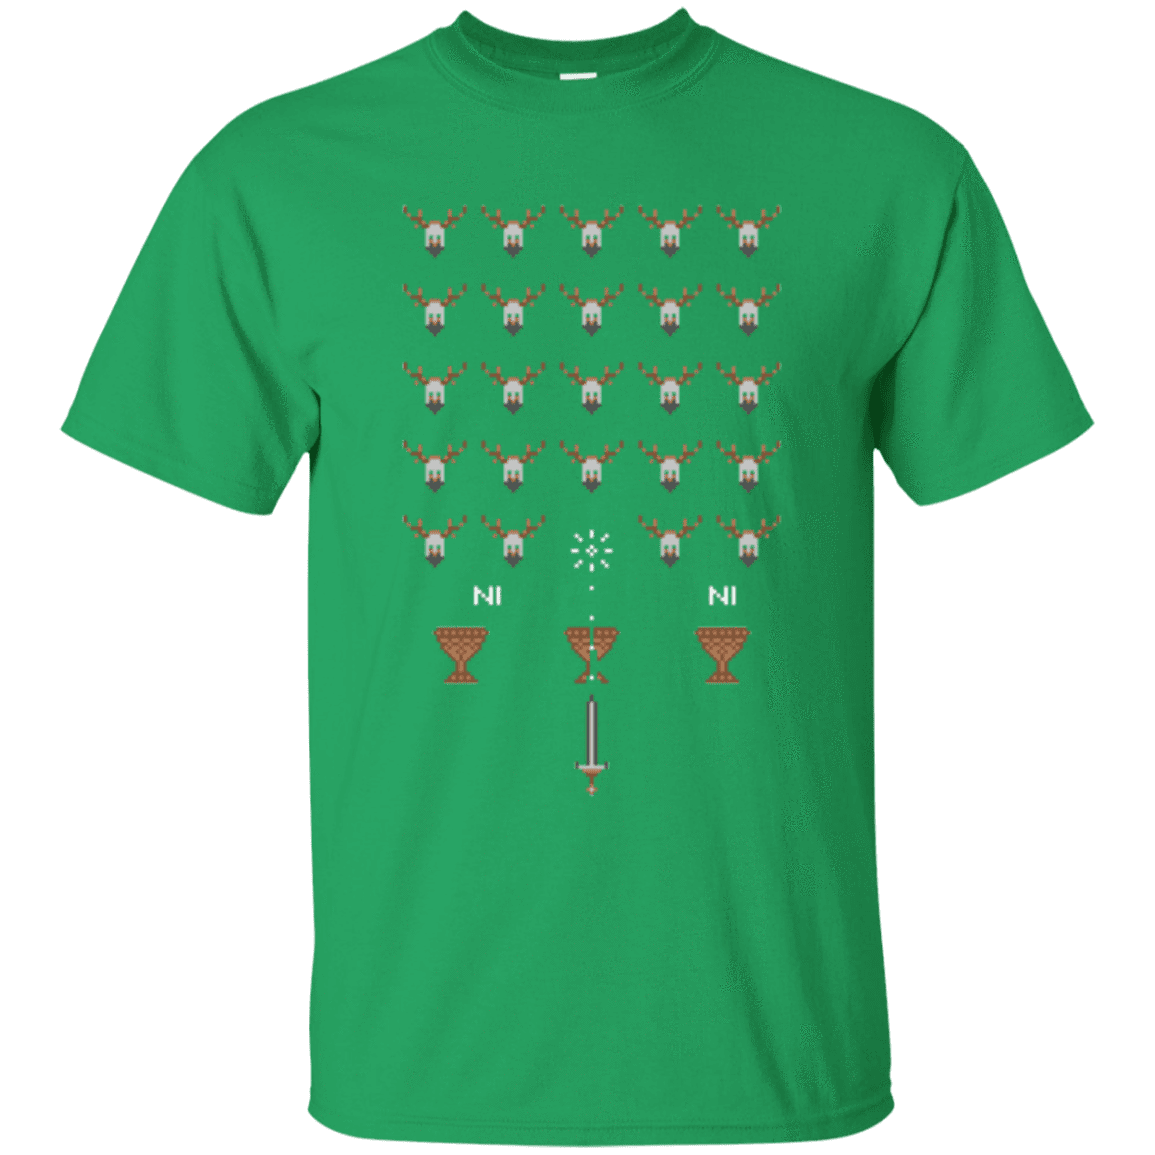 T-Shirts Irish Green / Small Space NI Invaders T-Shirt